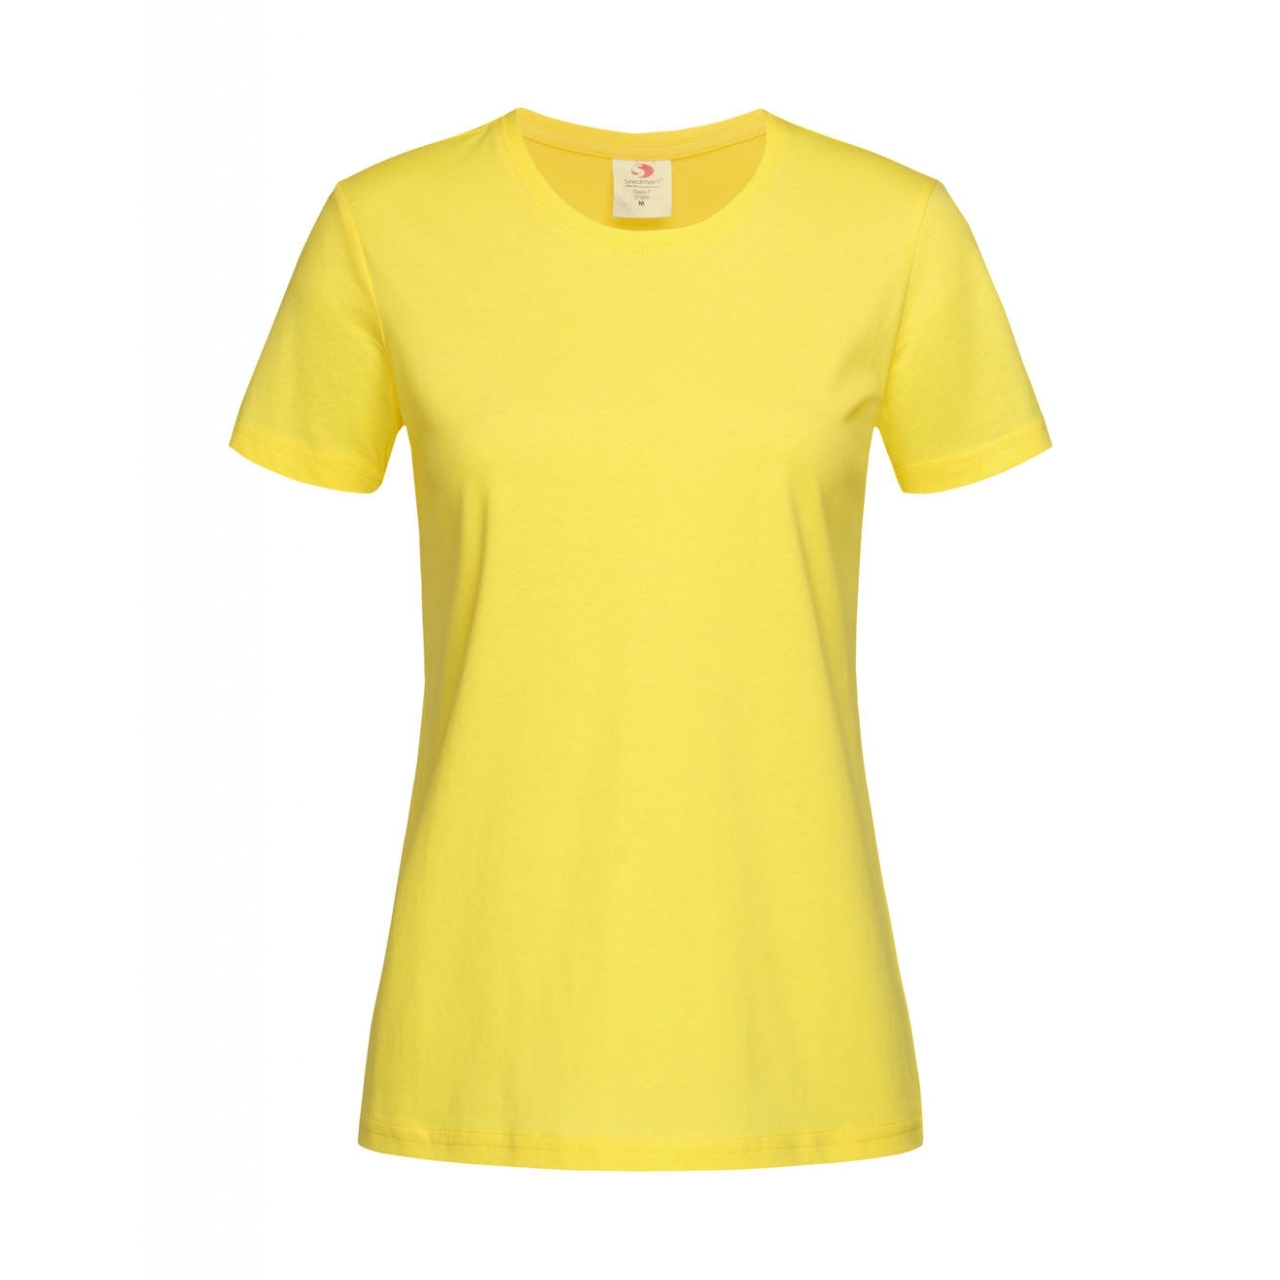 Tričko dámské Stedman Fitted s kulatým výstřihem - žluté, XL